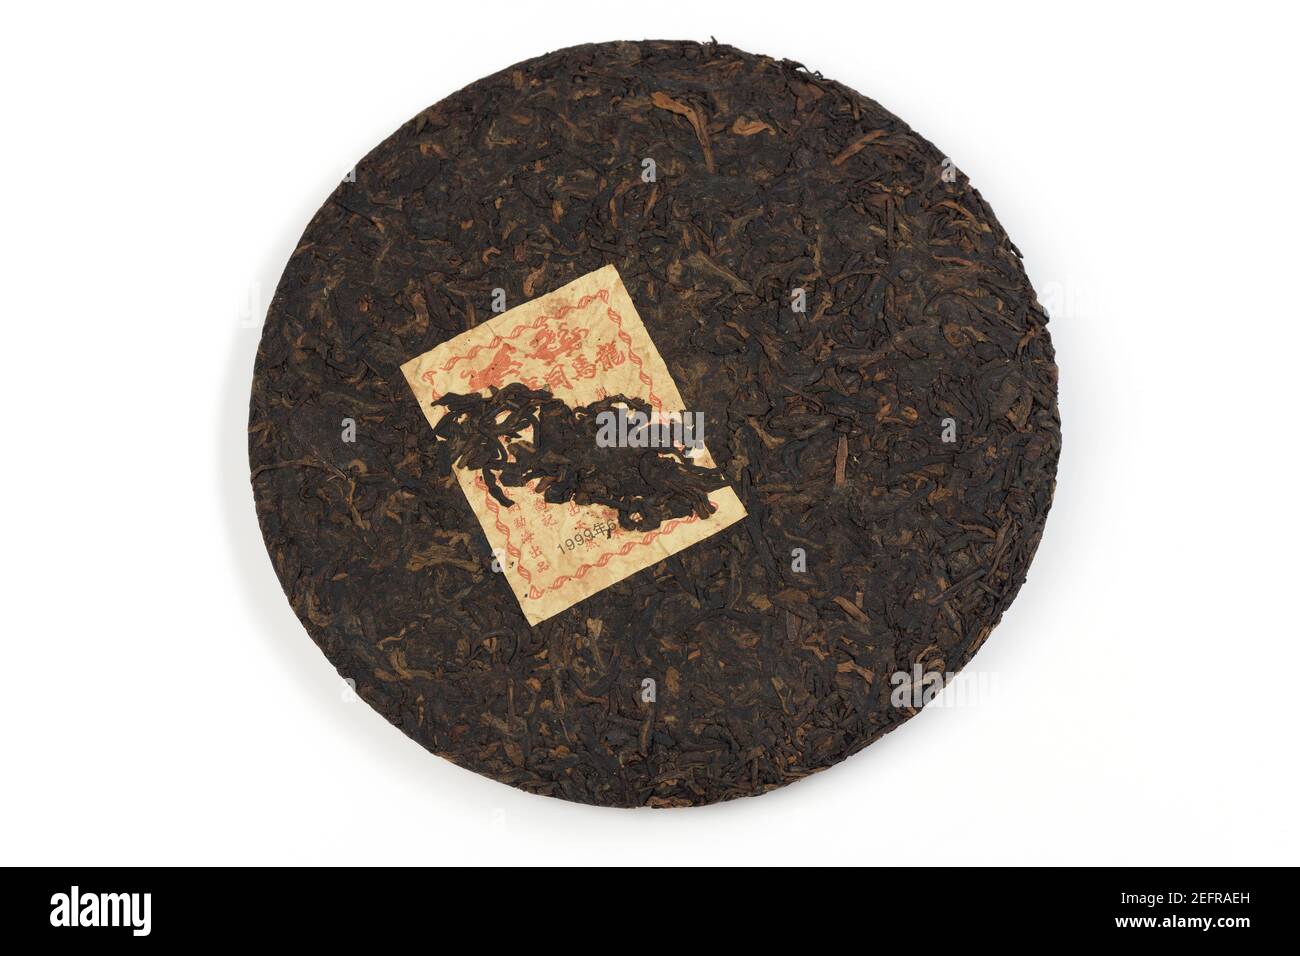 Pu'er ou pu-erh, thé chinois fermenté, vieilli ou mûri pendant plus de 20 ans à partir de 1999, pressé en forme de gâteau rond. Thé noir chinois. Disque isolé Banque D'Images